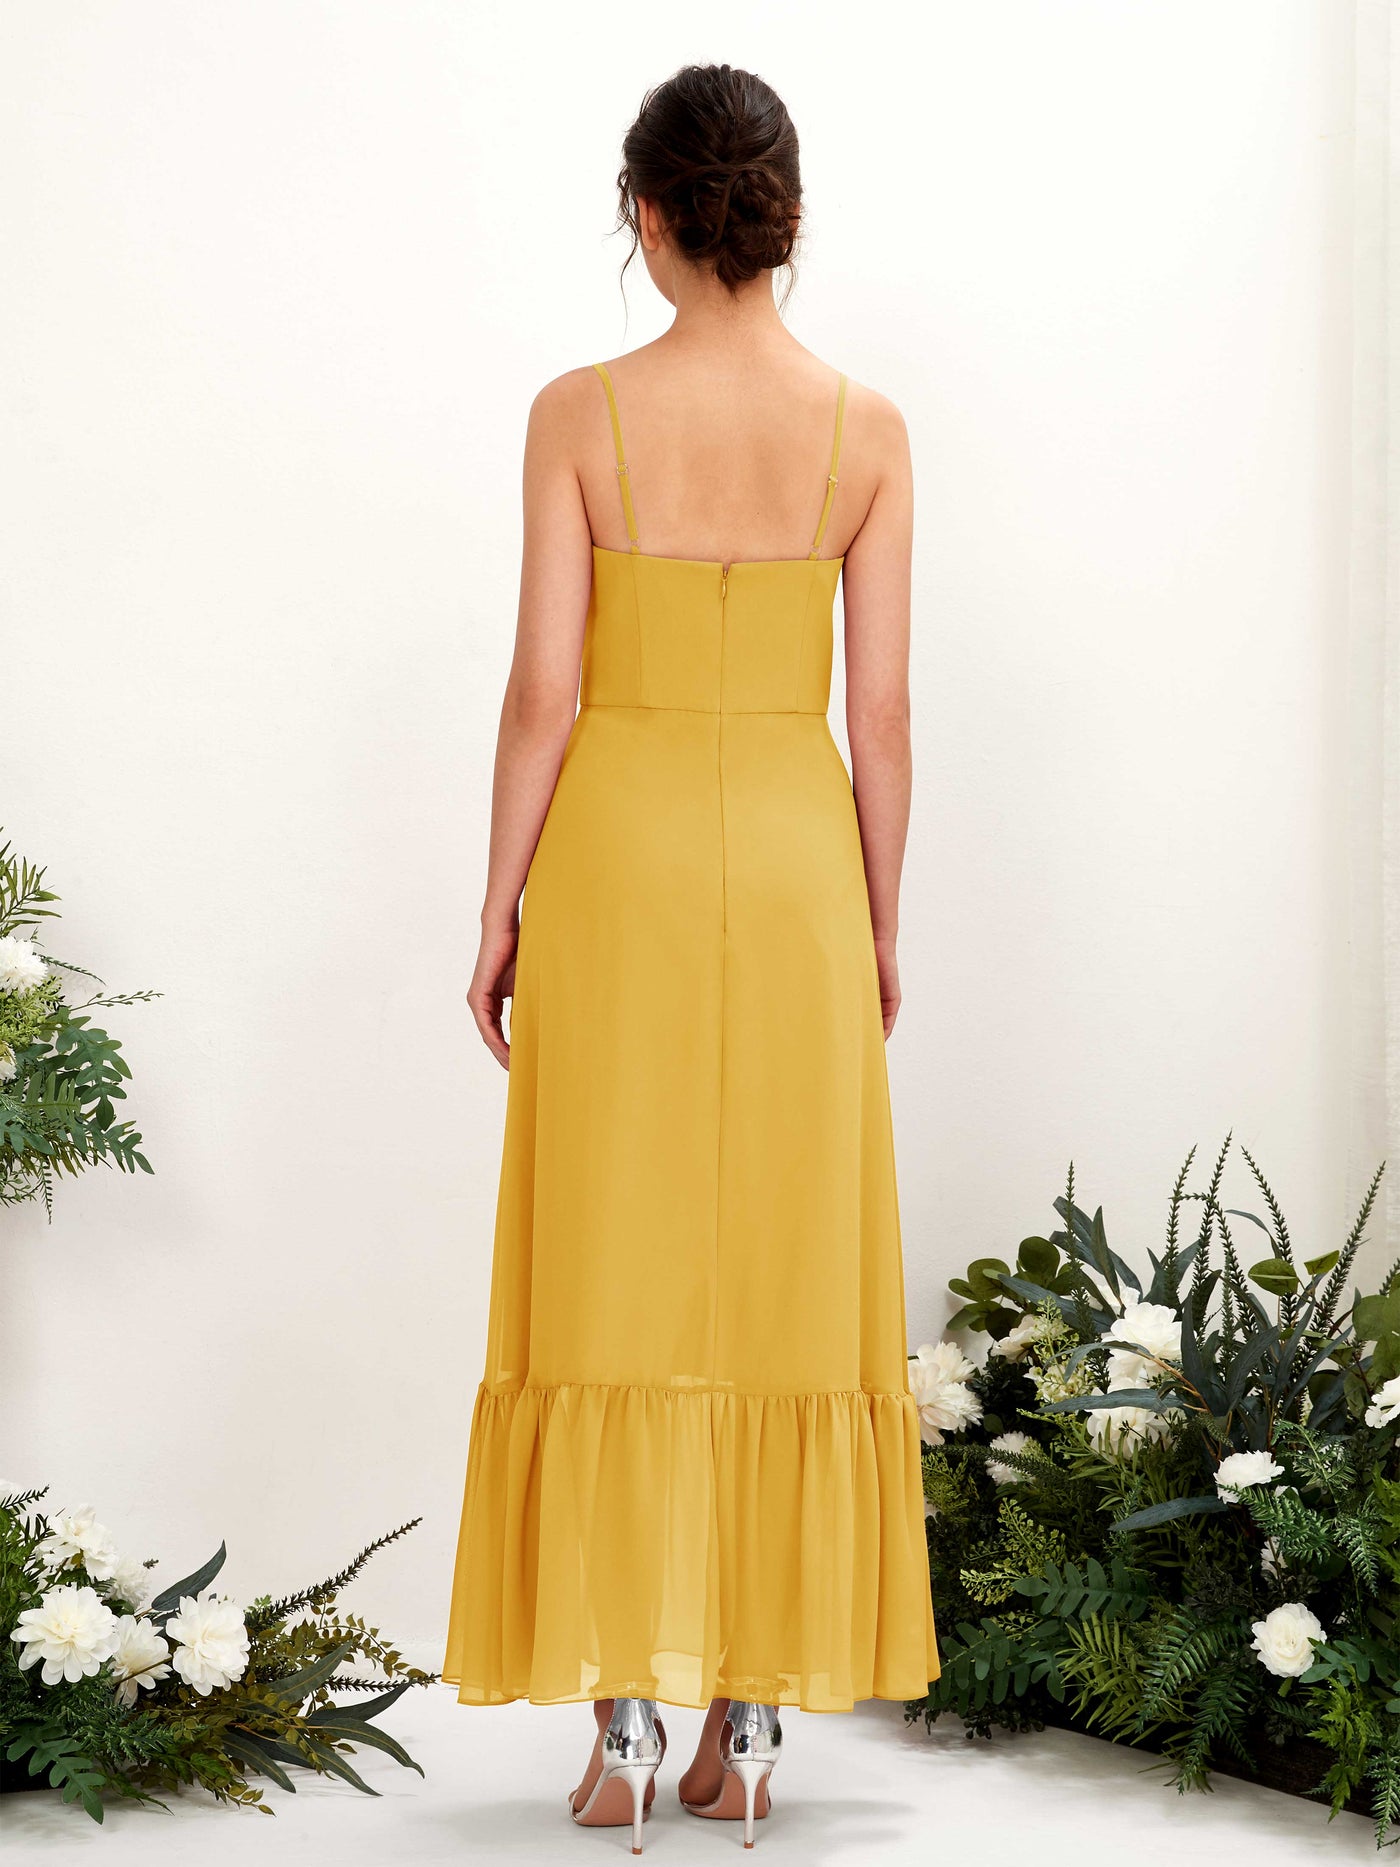 Spaghetti-straps Sweetheart Sleeveless Chiffon Bridesmaid Dress - Mustard Yellow (81223033)#color_mustard-yellow